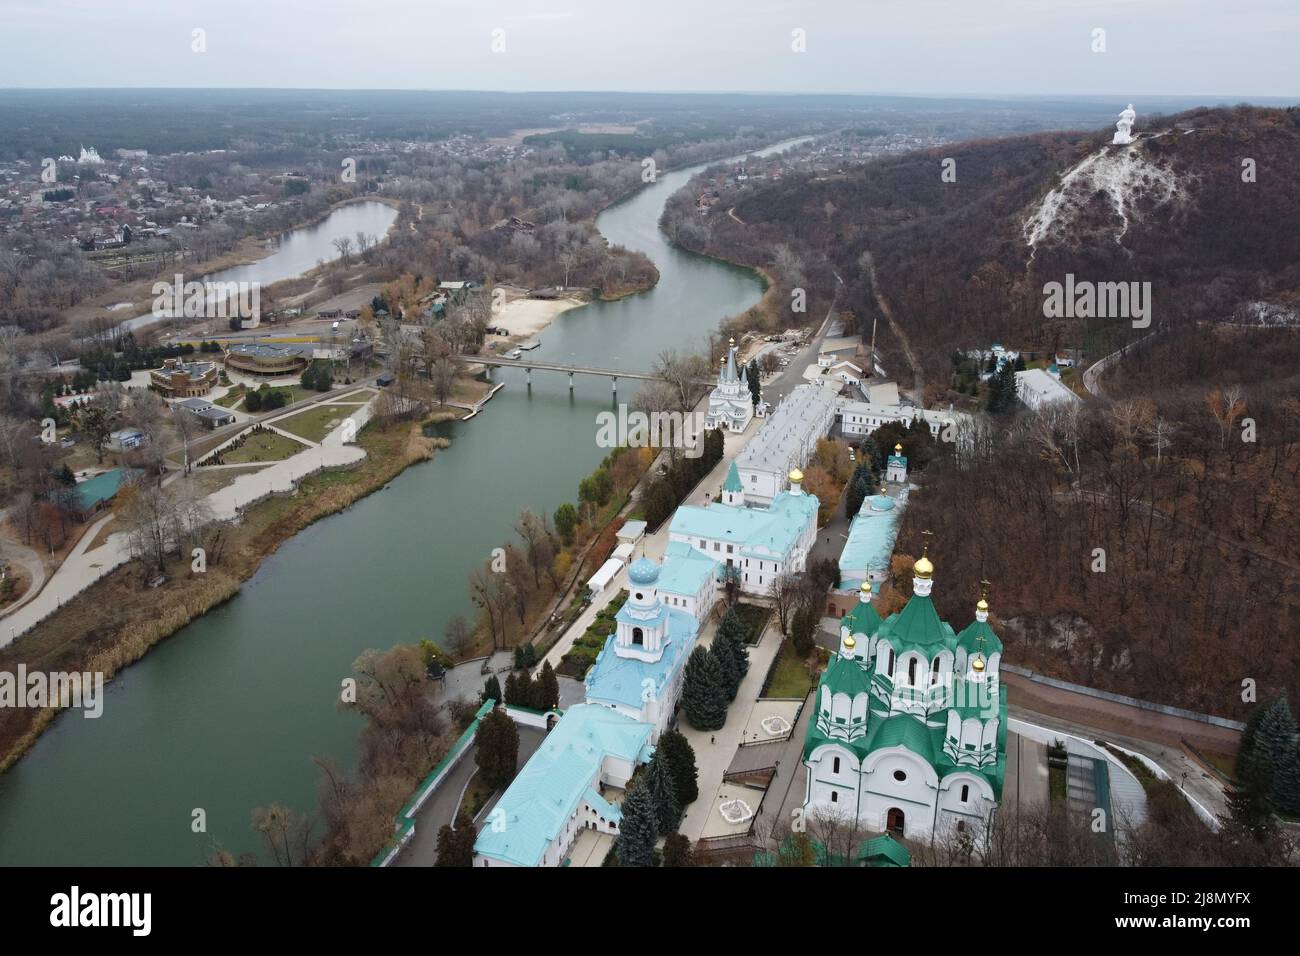 Vue panoramique sur le drone aérien de Svyatohirsk Lavra, la rivière Seversky Donets avec pont, et le village de Svyatohirsk, région de Donetsk, Ukraine. Banque D'Images